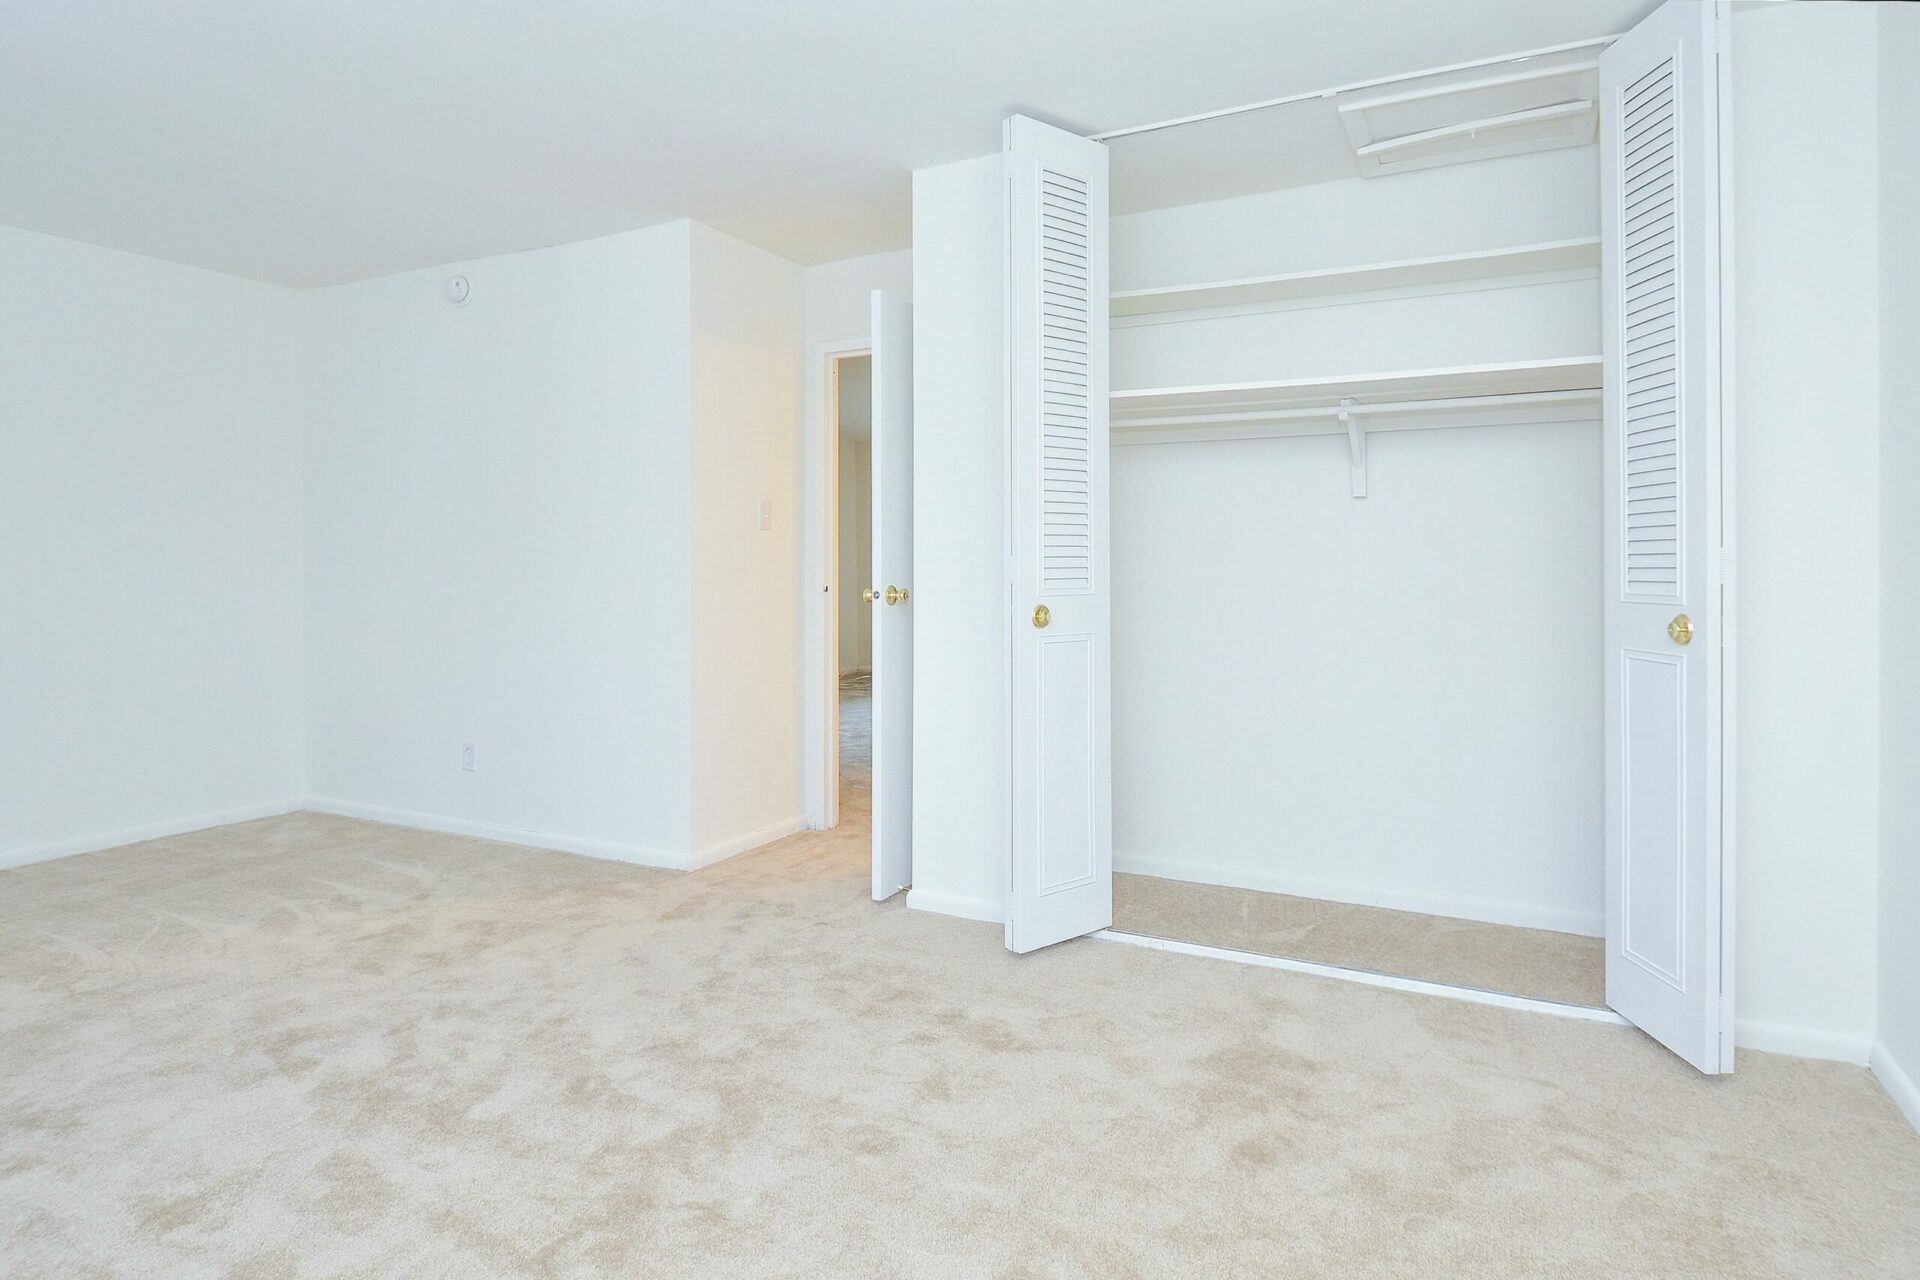 Westover Village carpeted bedroom with double door closet